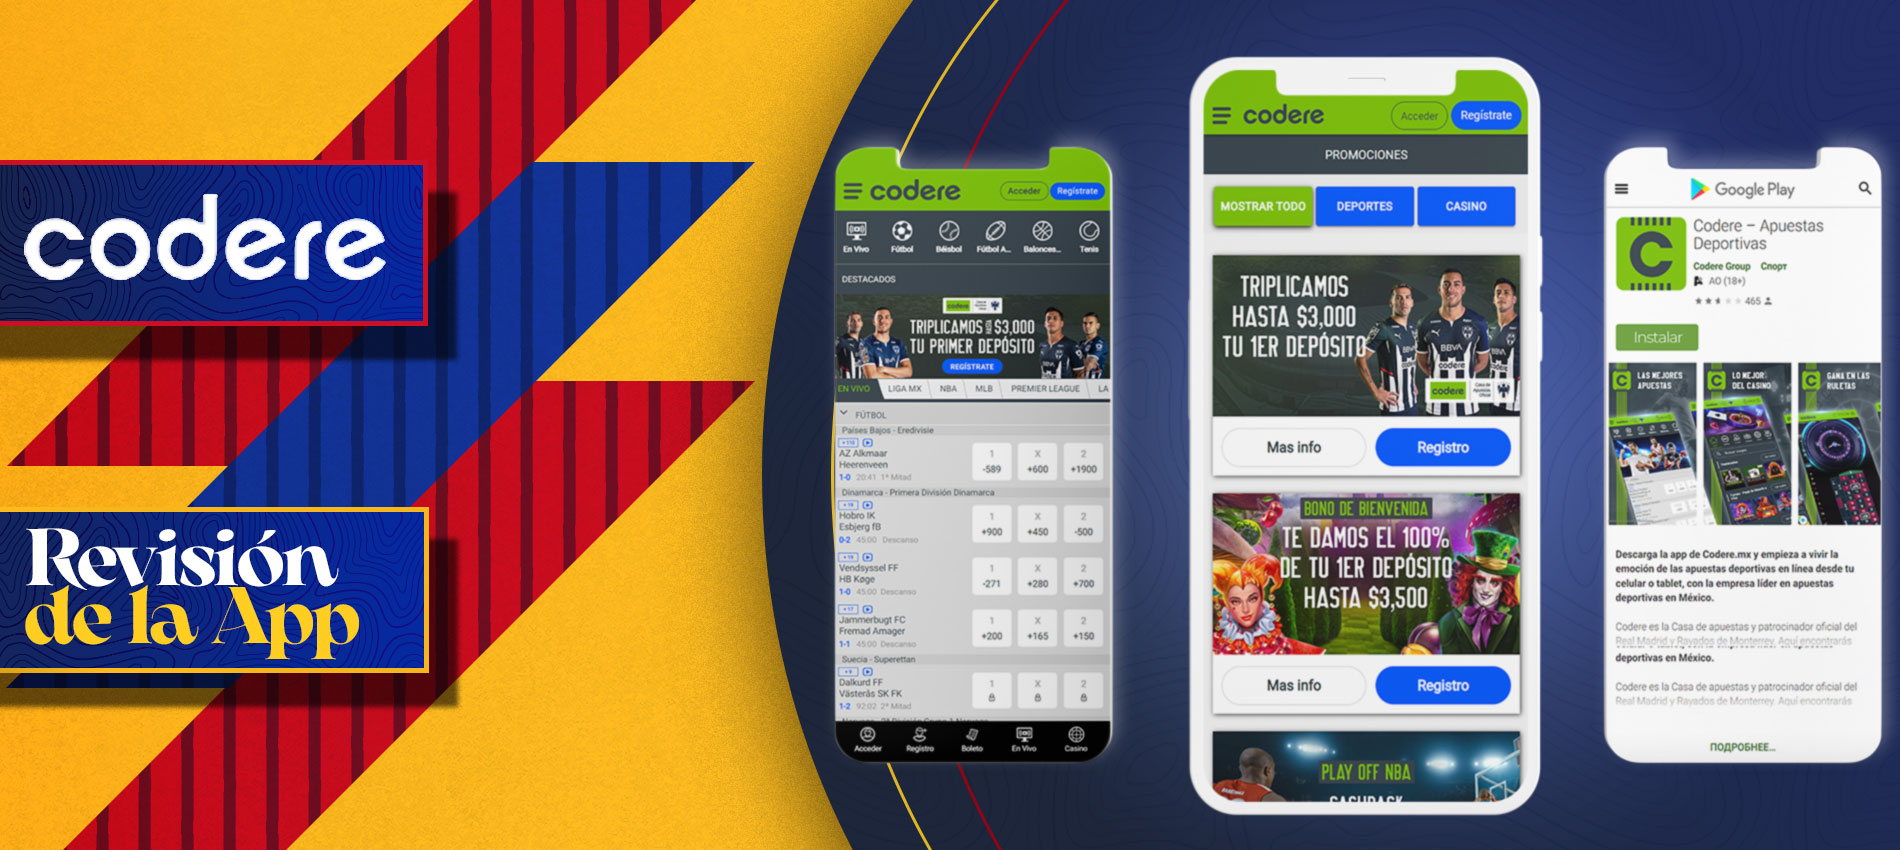 Interfaz de la app móvil de apuestas Codere en Colombia